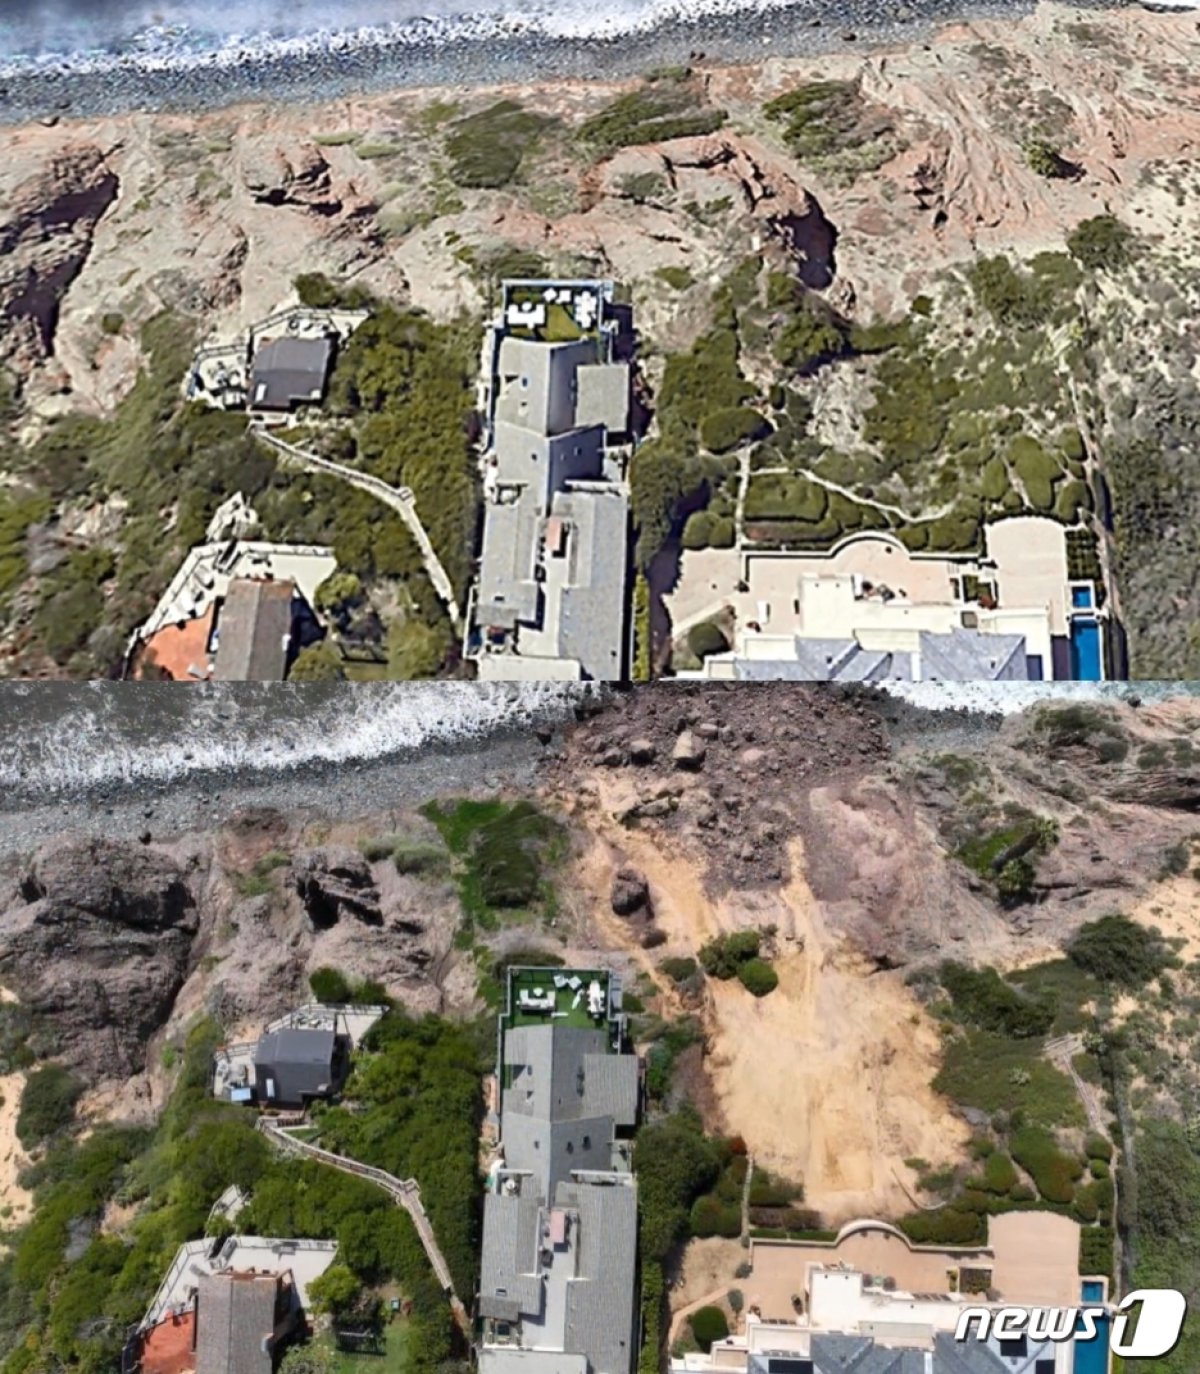  지난주 이어진 폭우로 캘리포니아주 남부 오렌지 카운티 다나 포인트(Dana Point)에서 붕괴가 발생했다. 구글어스로 본 붕괴 전(위)과 붕괴 후(아래) 모습.